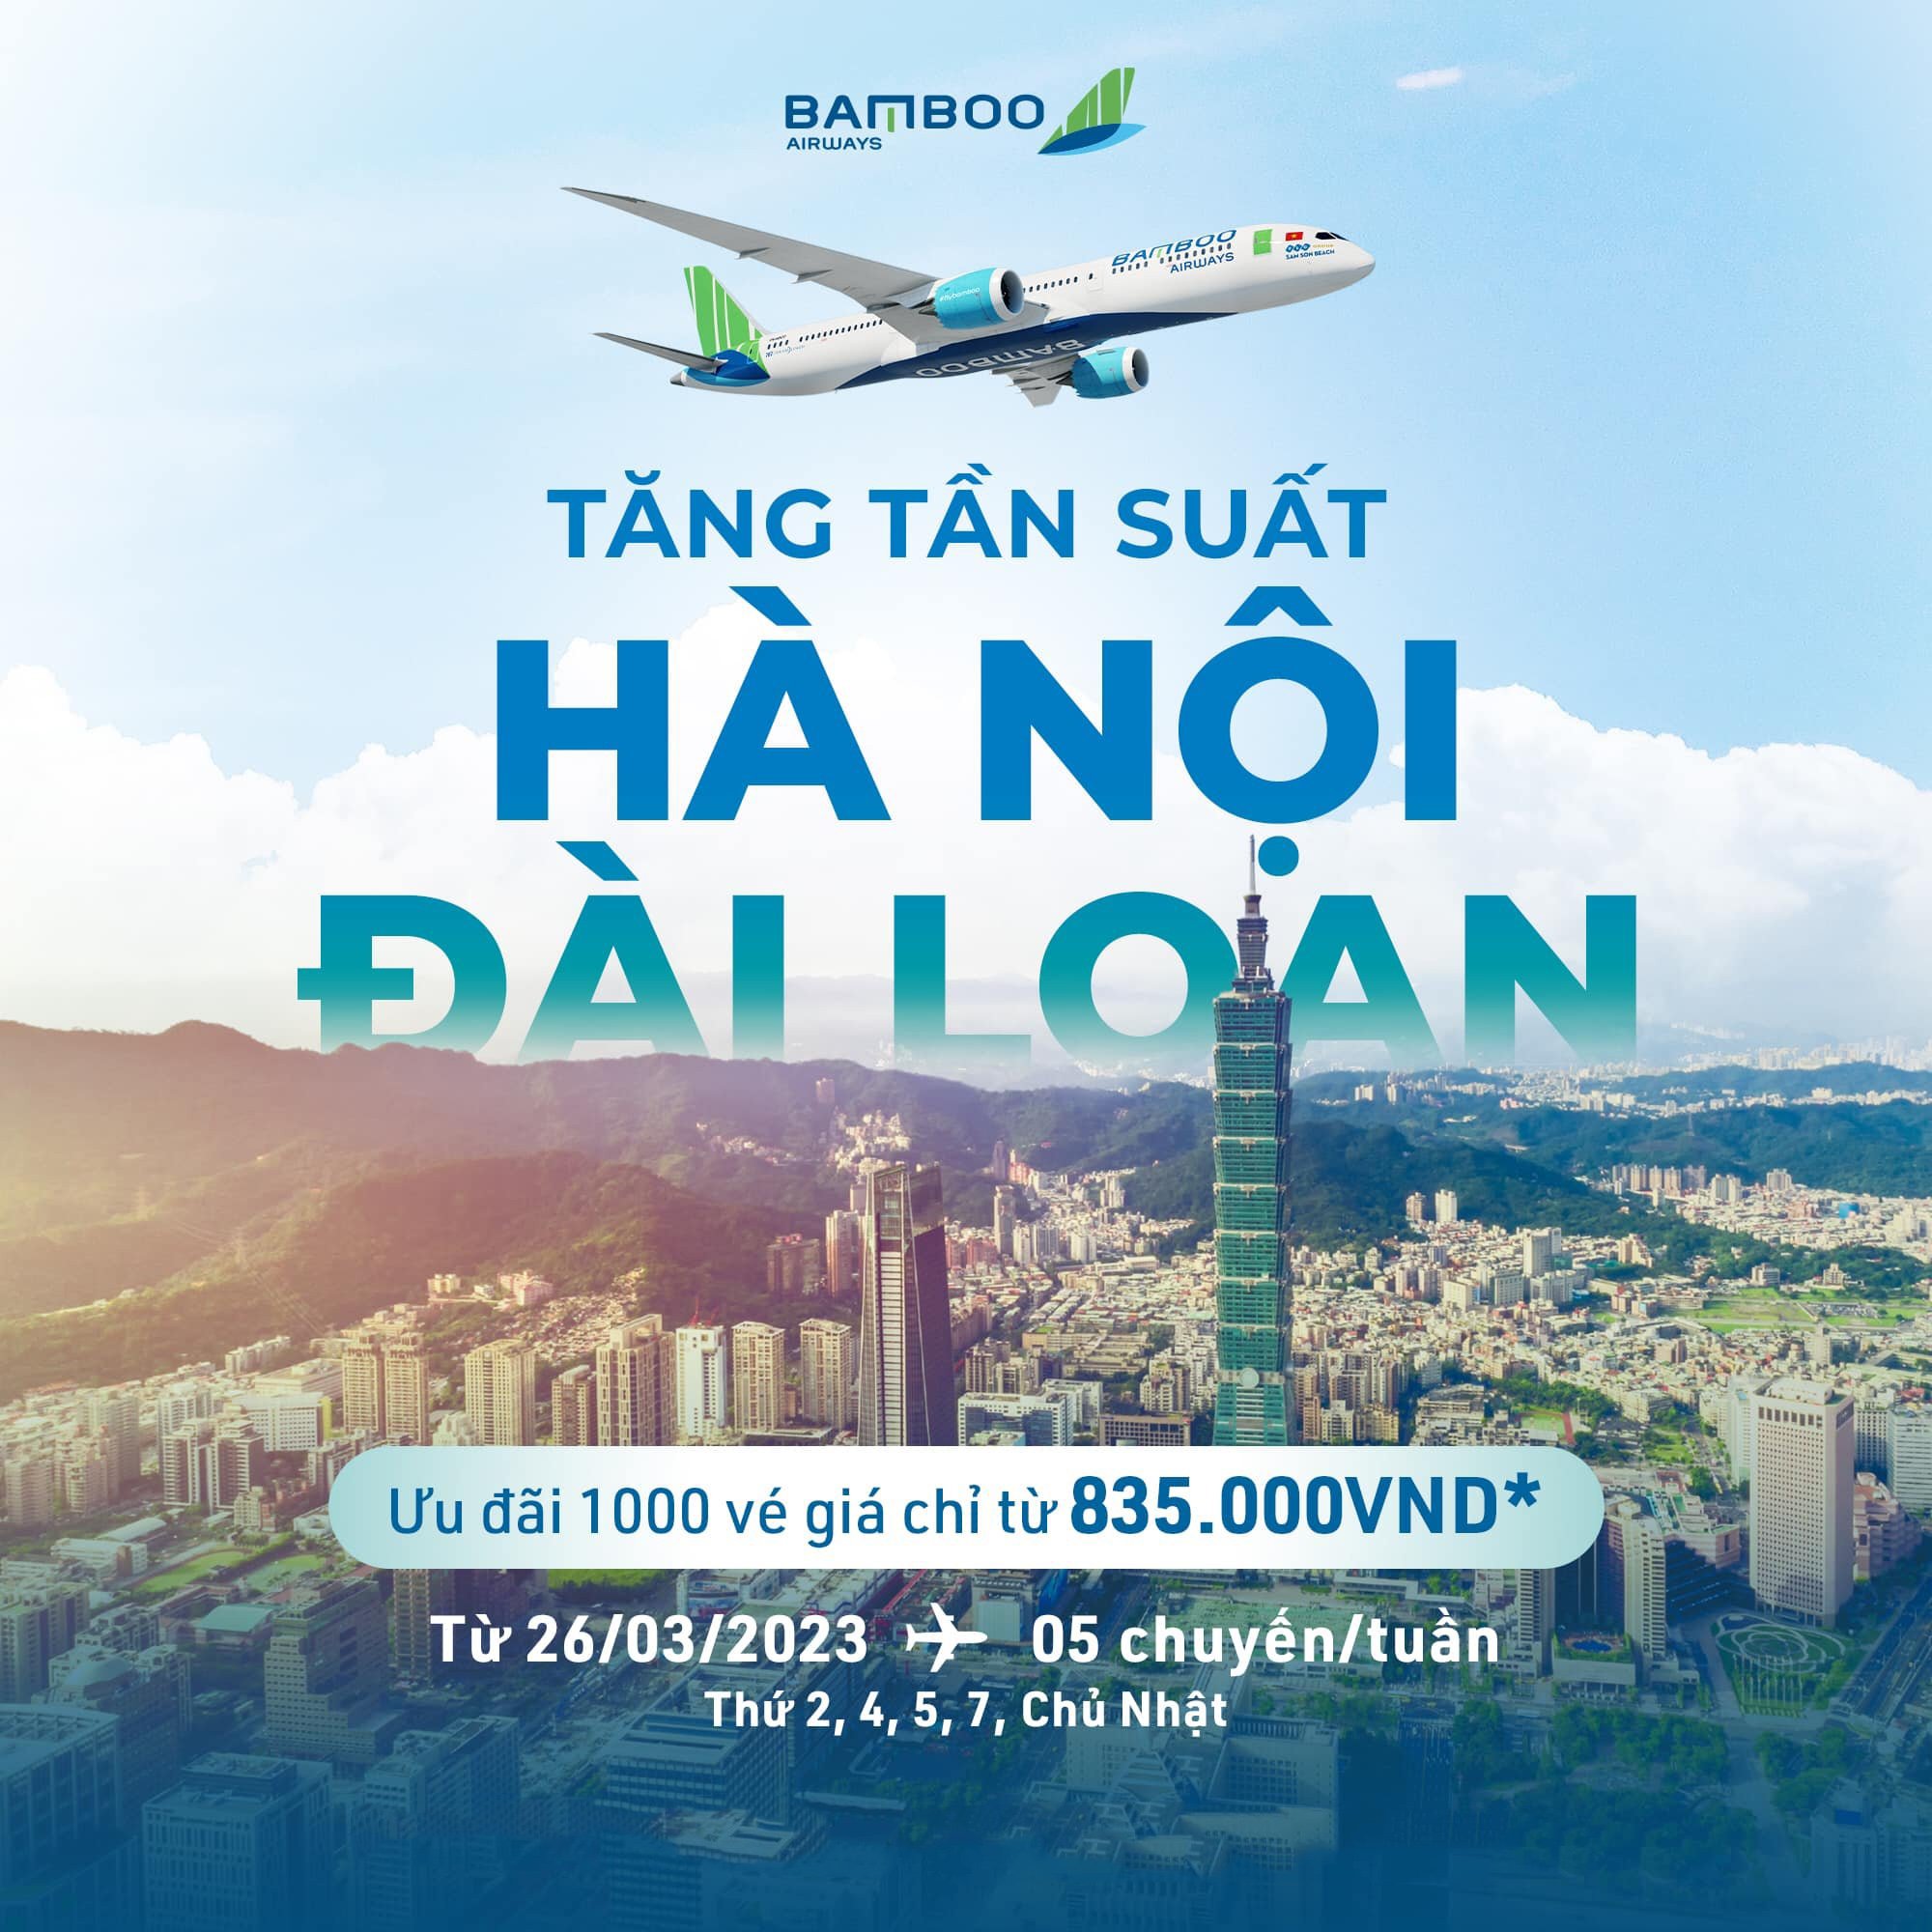 BAMBOO AIRWAYS TĂNG CHUYẾN BAY TỚI ĐÀI LOAN, THỎA THUÊ LÊN LỊCH NGẮM HOA ANH ĐÀO